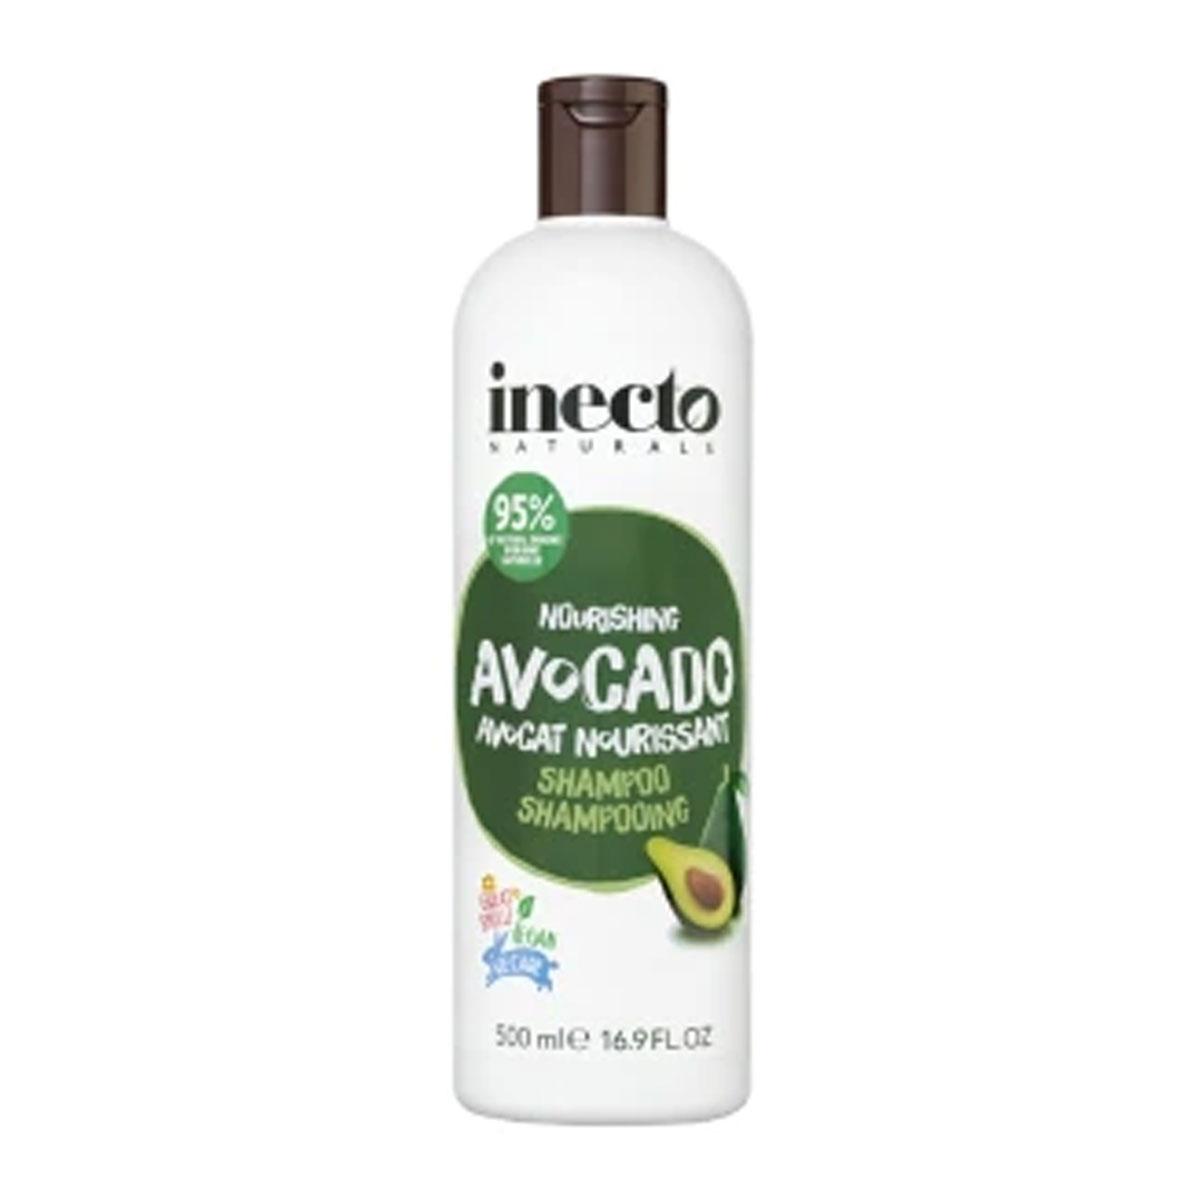 شامپو آووکادو - avocado shampoo